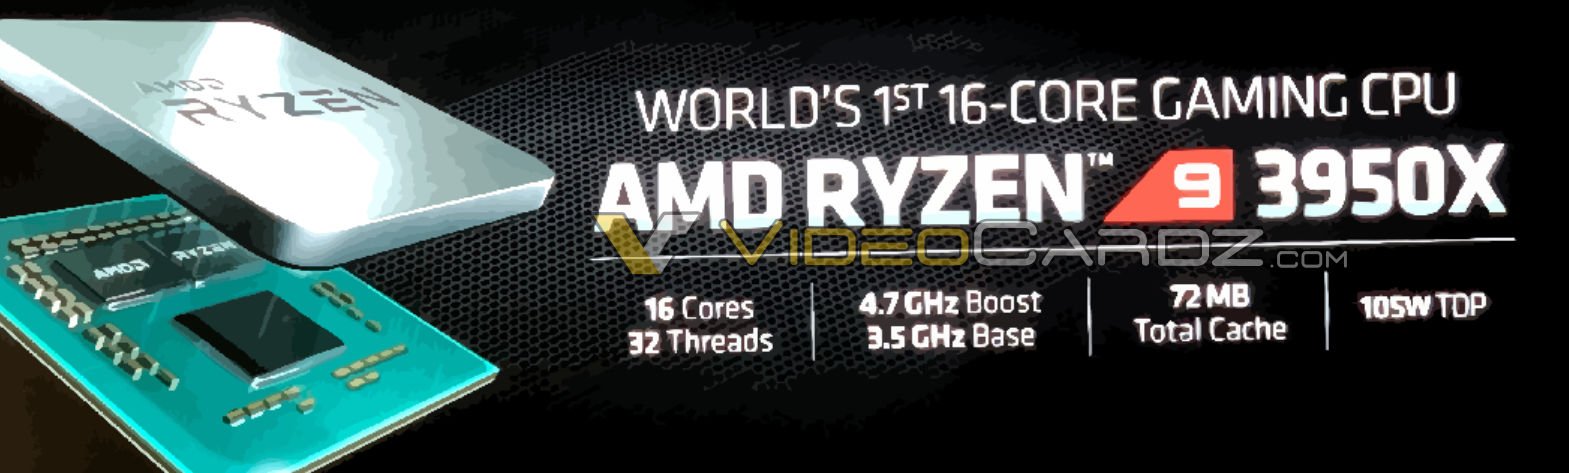 AMD-Ryzen-9-3950X-11.jpg